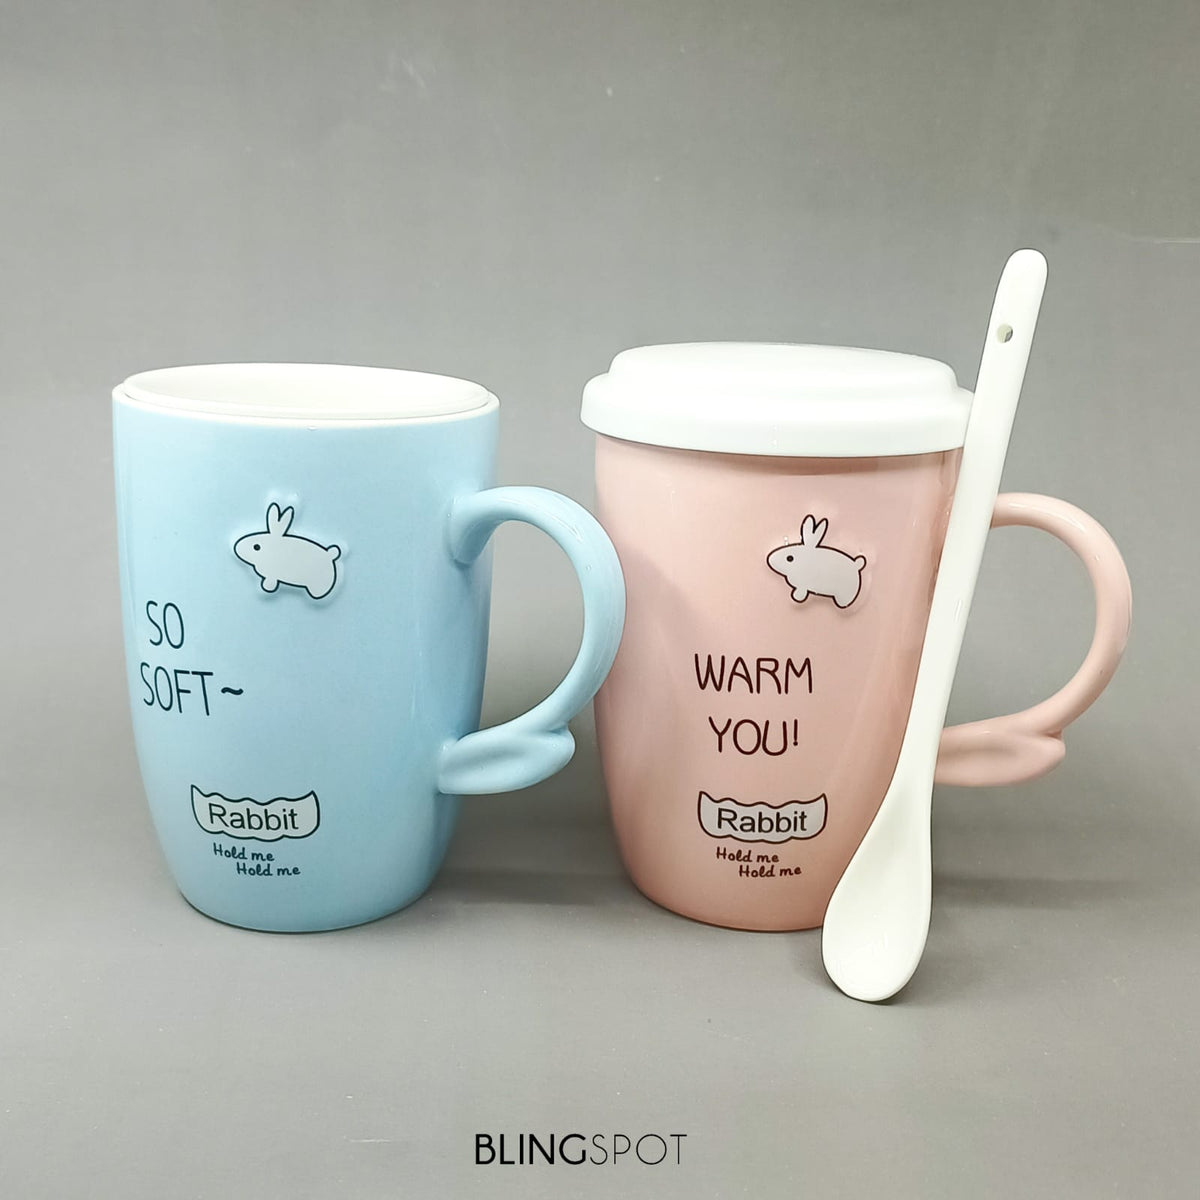 So Soft &amp; Warm You Rabbit - Ceramic Mug